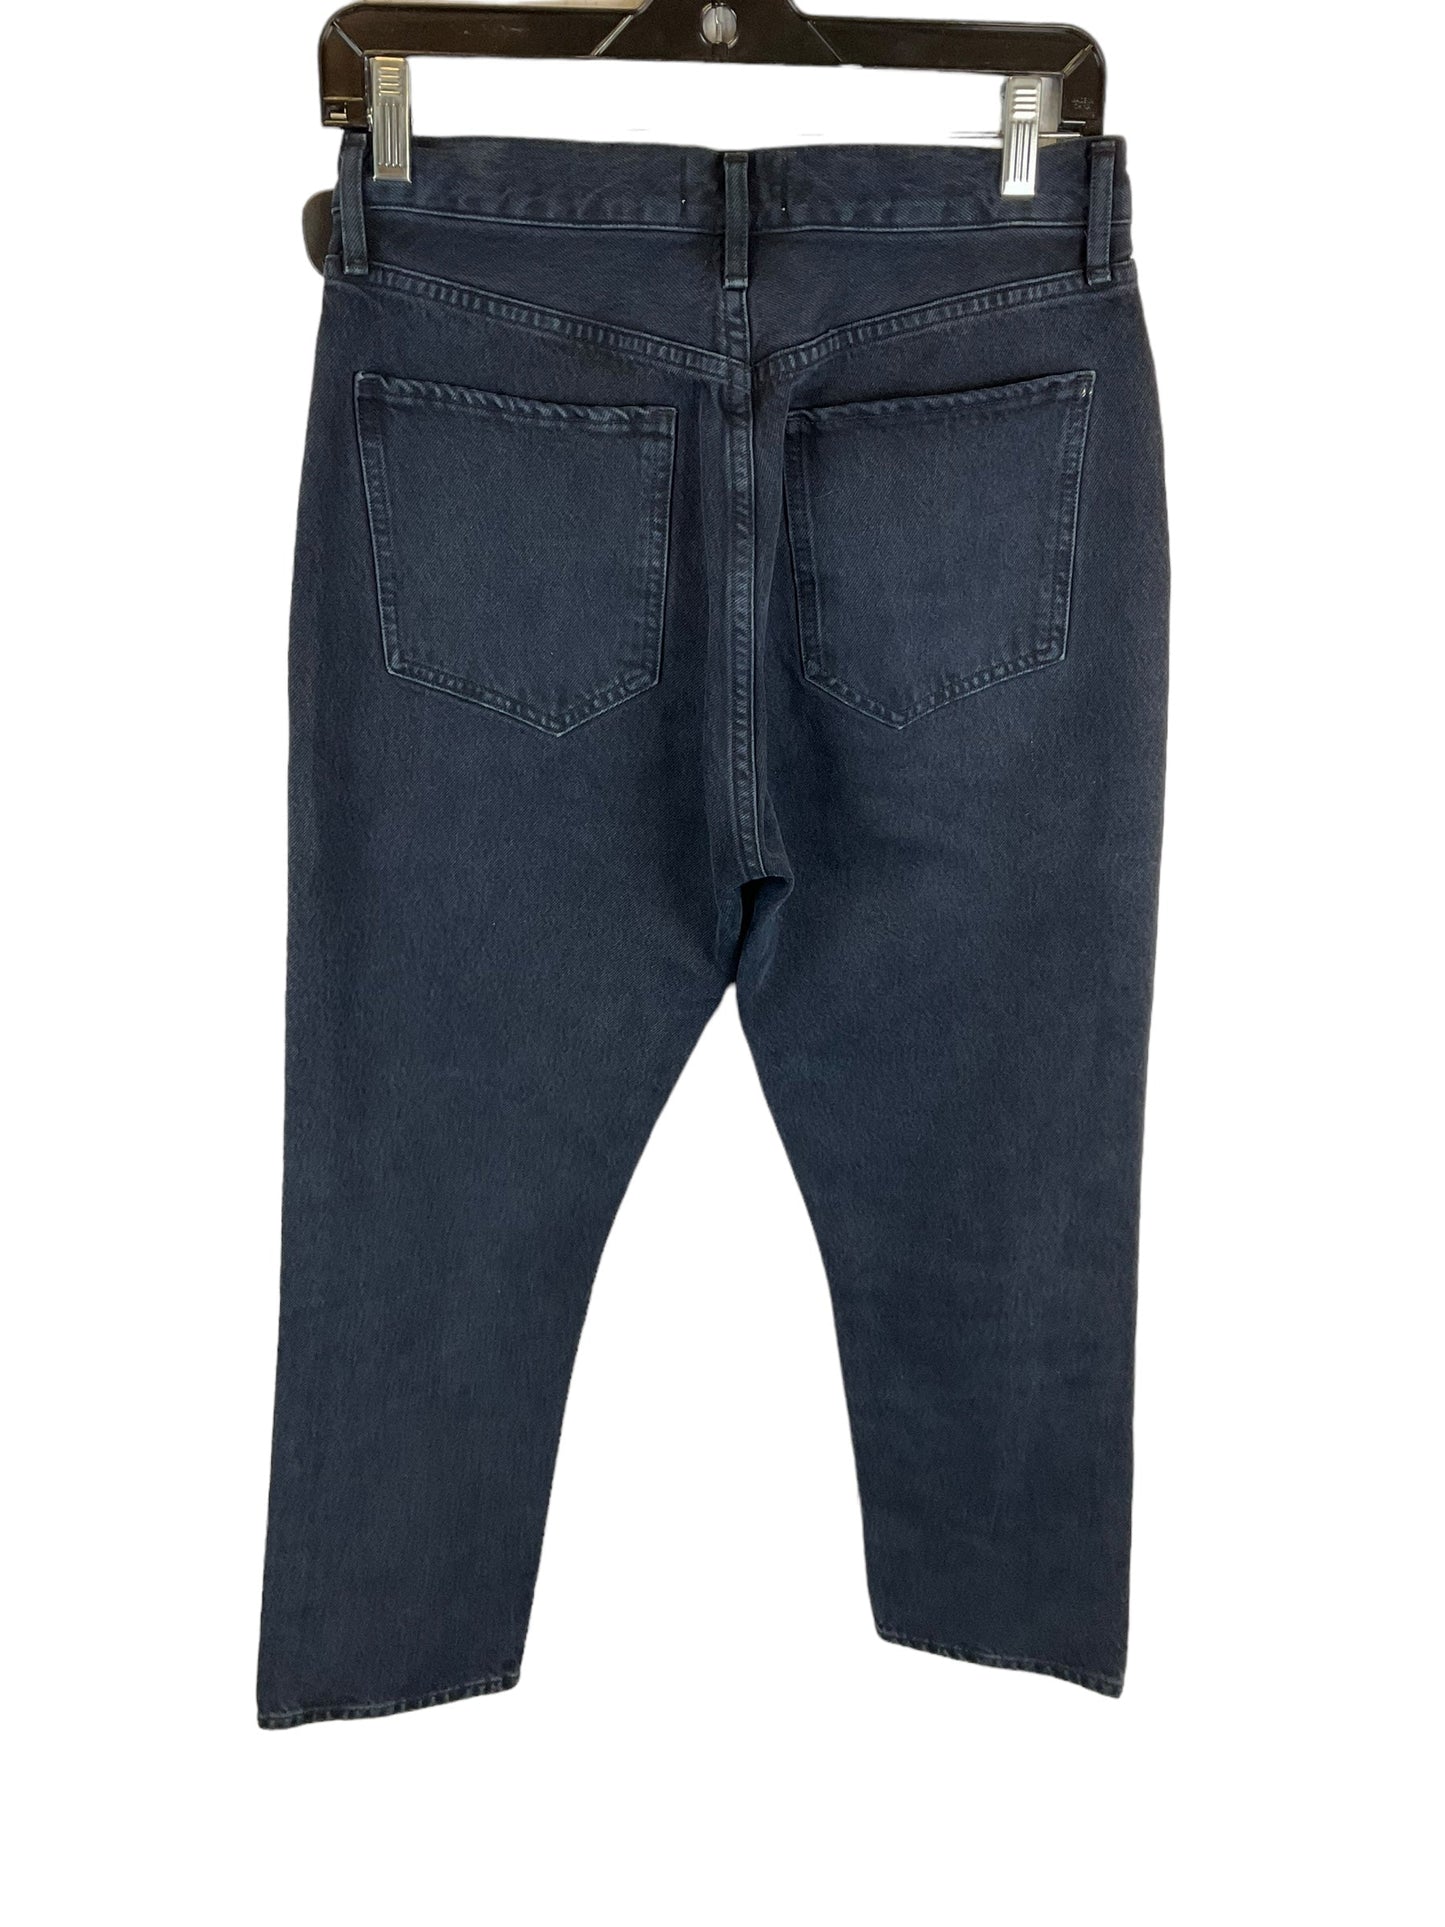 Blue Denim Jeans Designer Agolde, Size 4